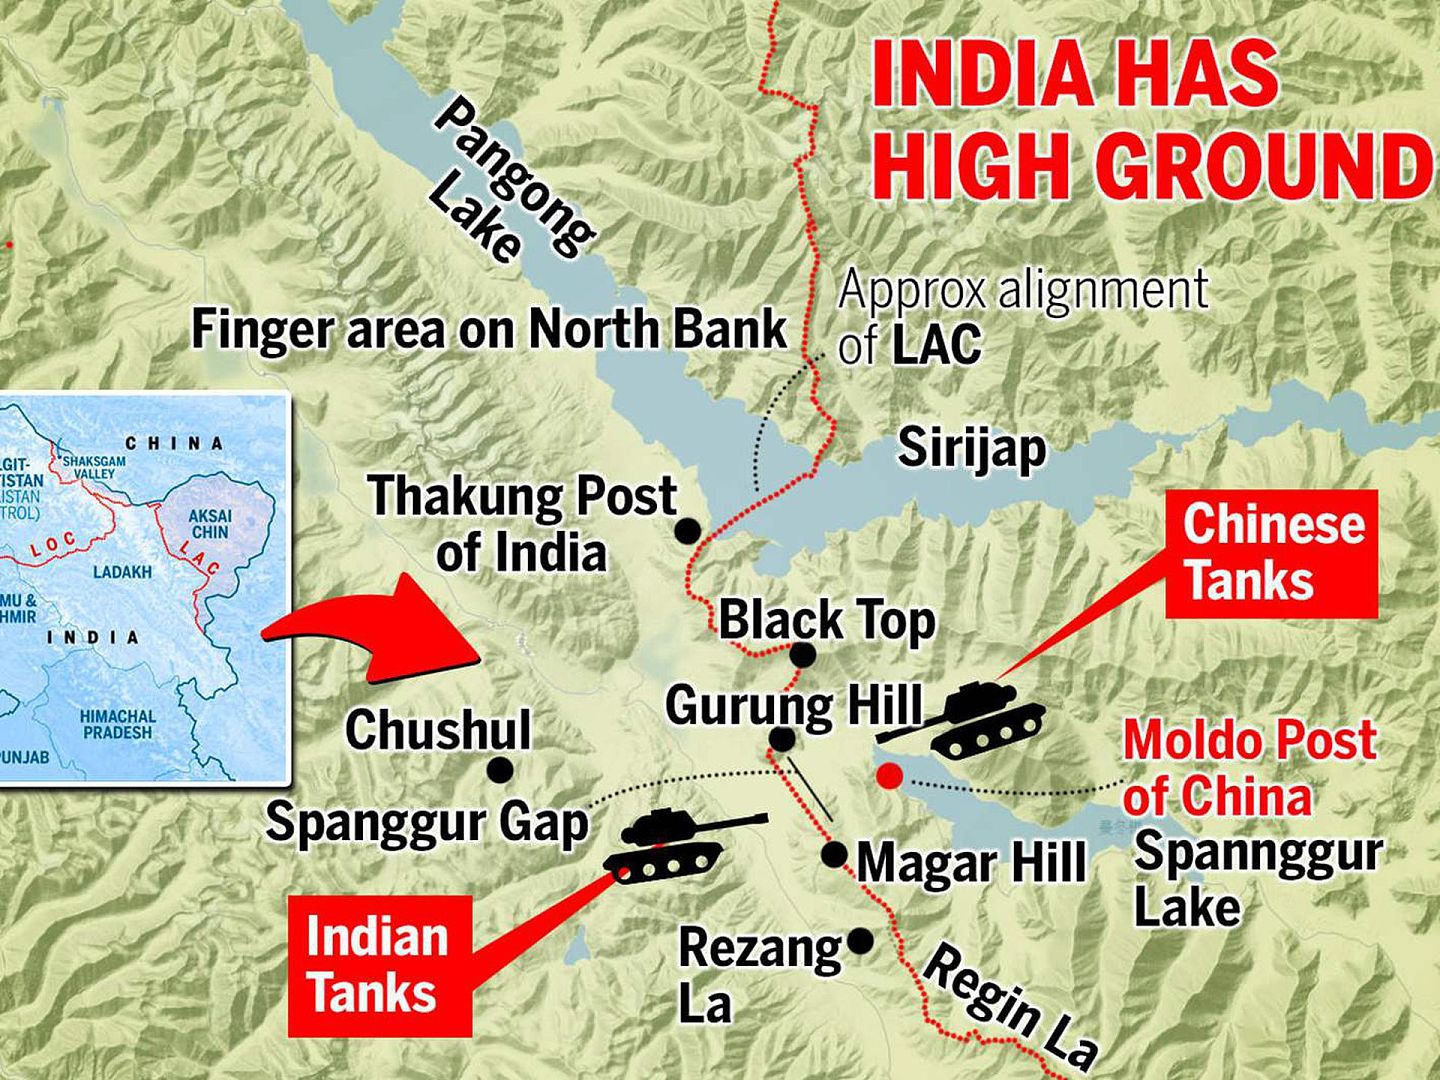 中印军队在班公湖对峙。印度军队2020年8月29日晚采取行动，占领了班公湖南岸关键高地。两军已出动坦克对峙，局势一触即发。（The Times of India）